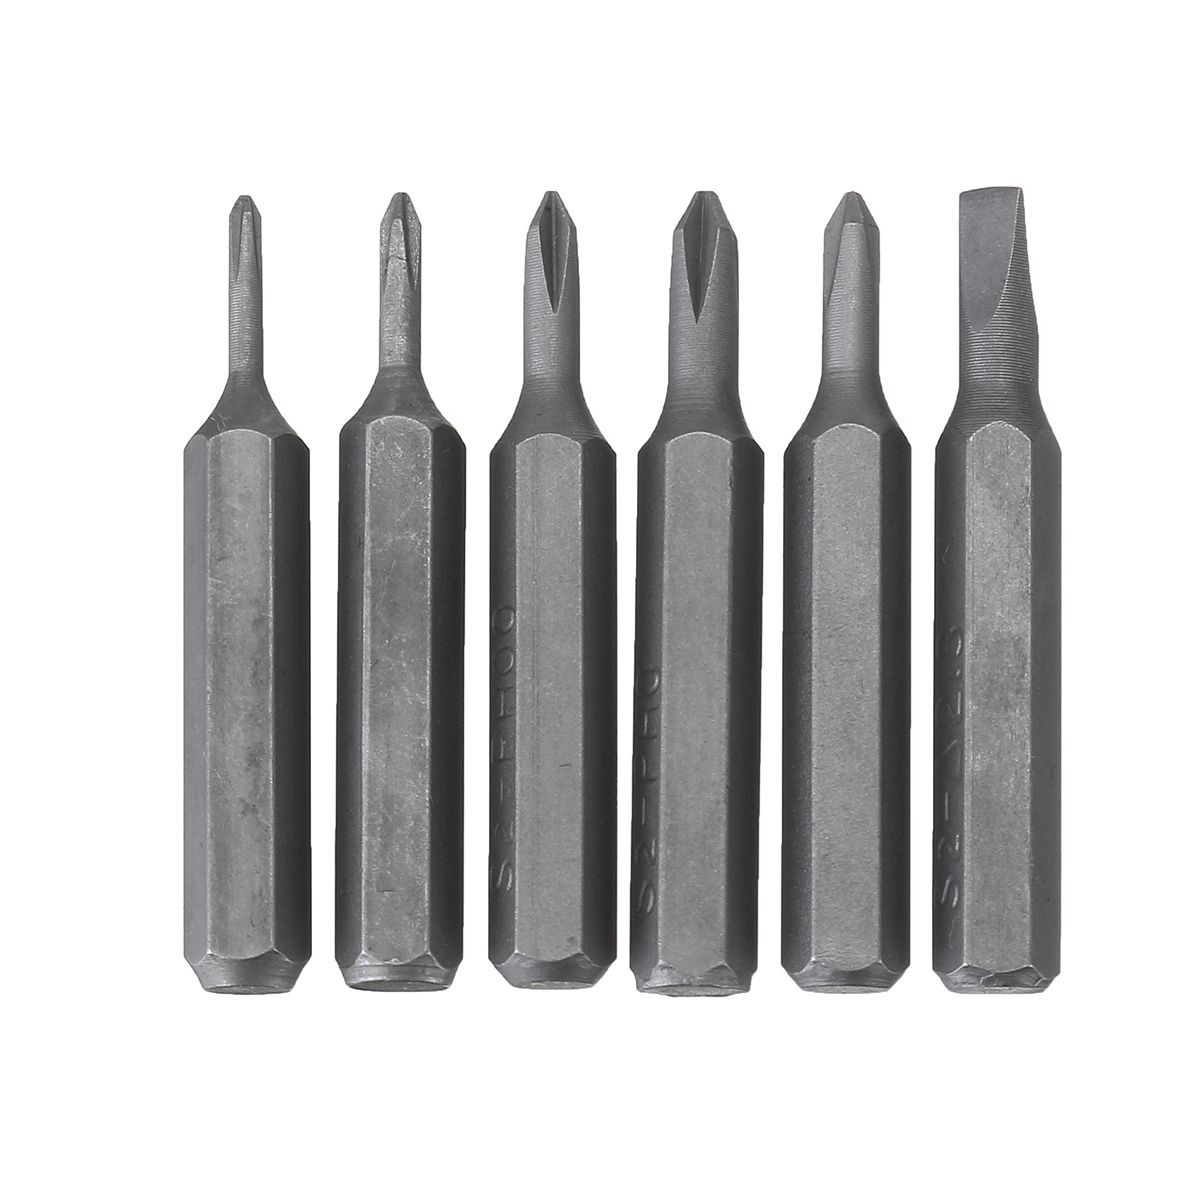 25-In-1-Magnetic-Multi-Tool-Screwdriver-Set-Alloy-Case-Repair-Kit-1646829